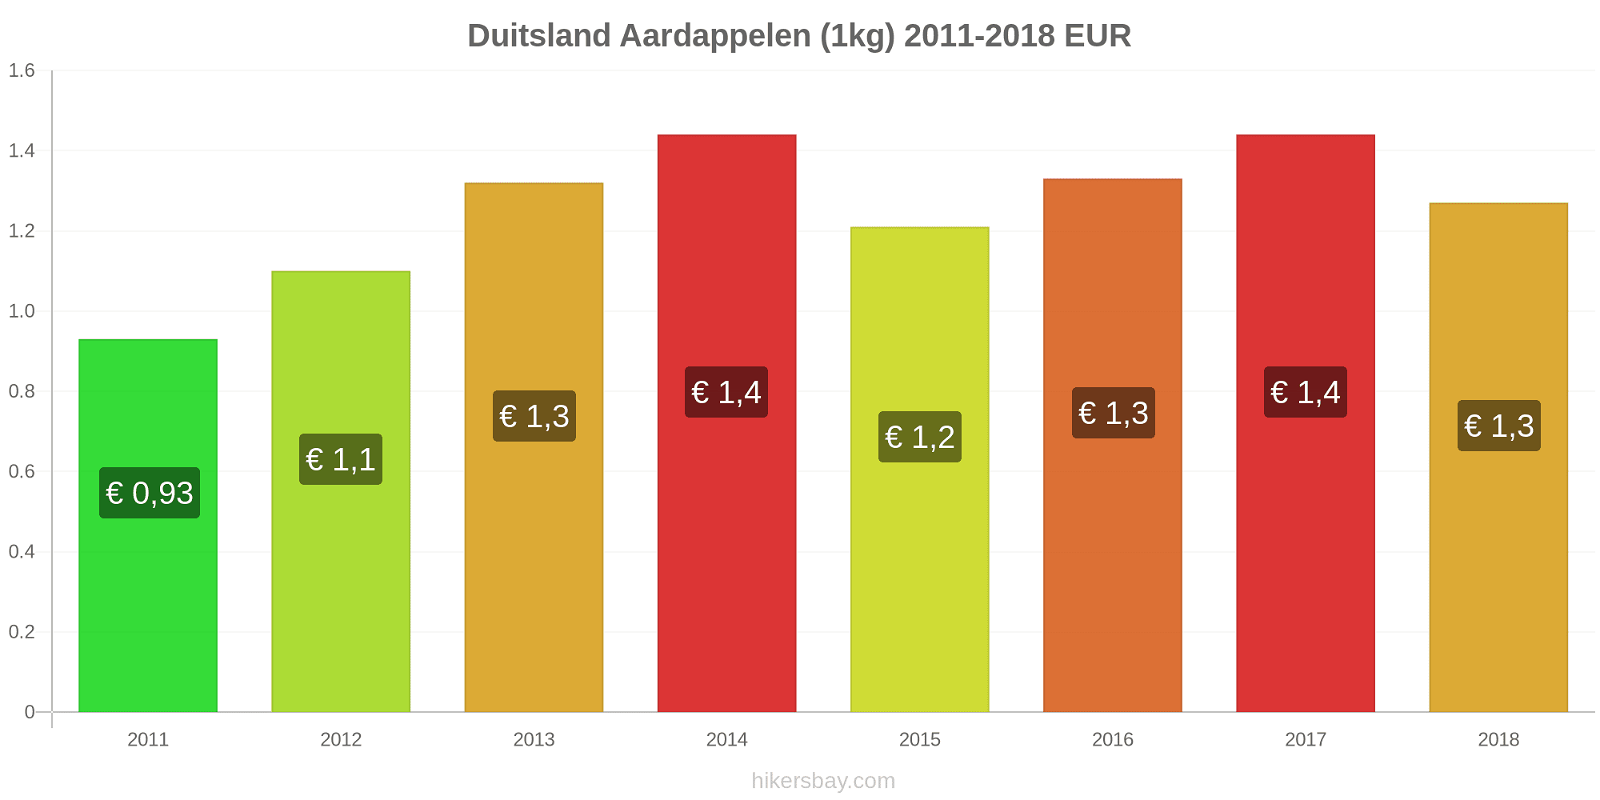 Duitsland prijswijzigingen Aardappelen (1kg) hikersbay.com